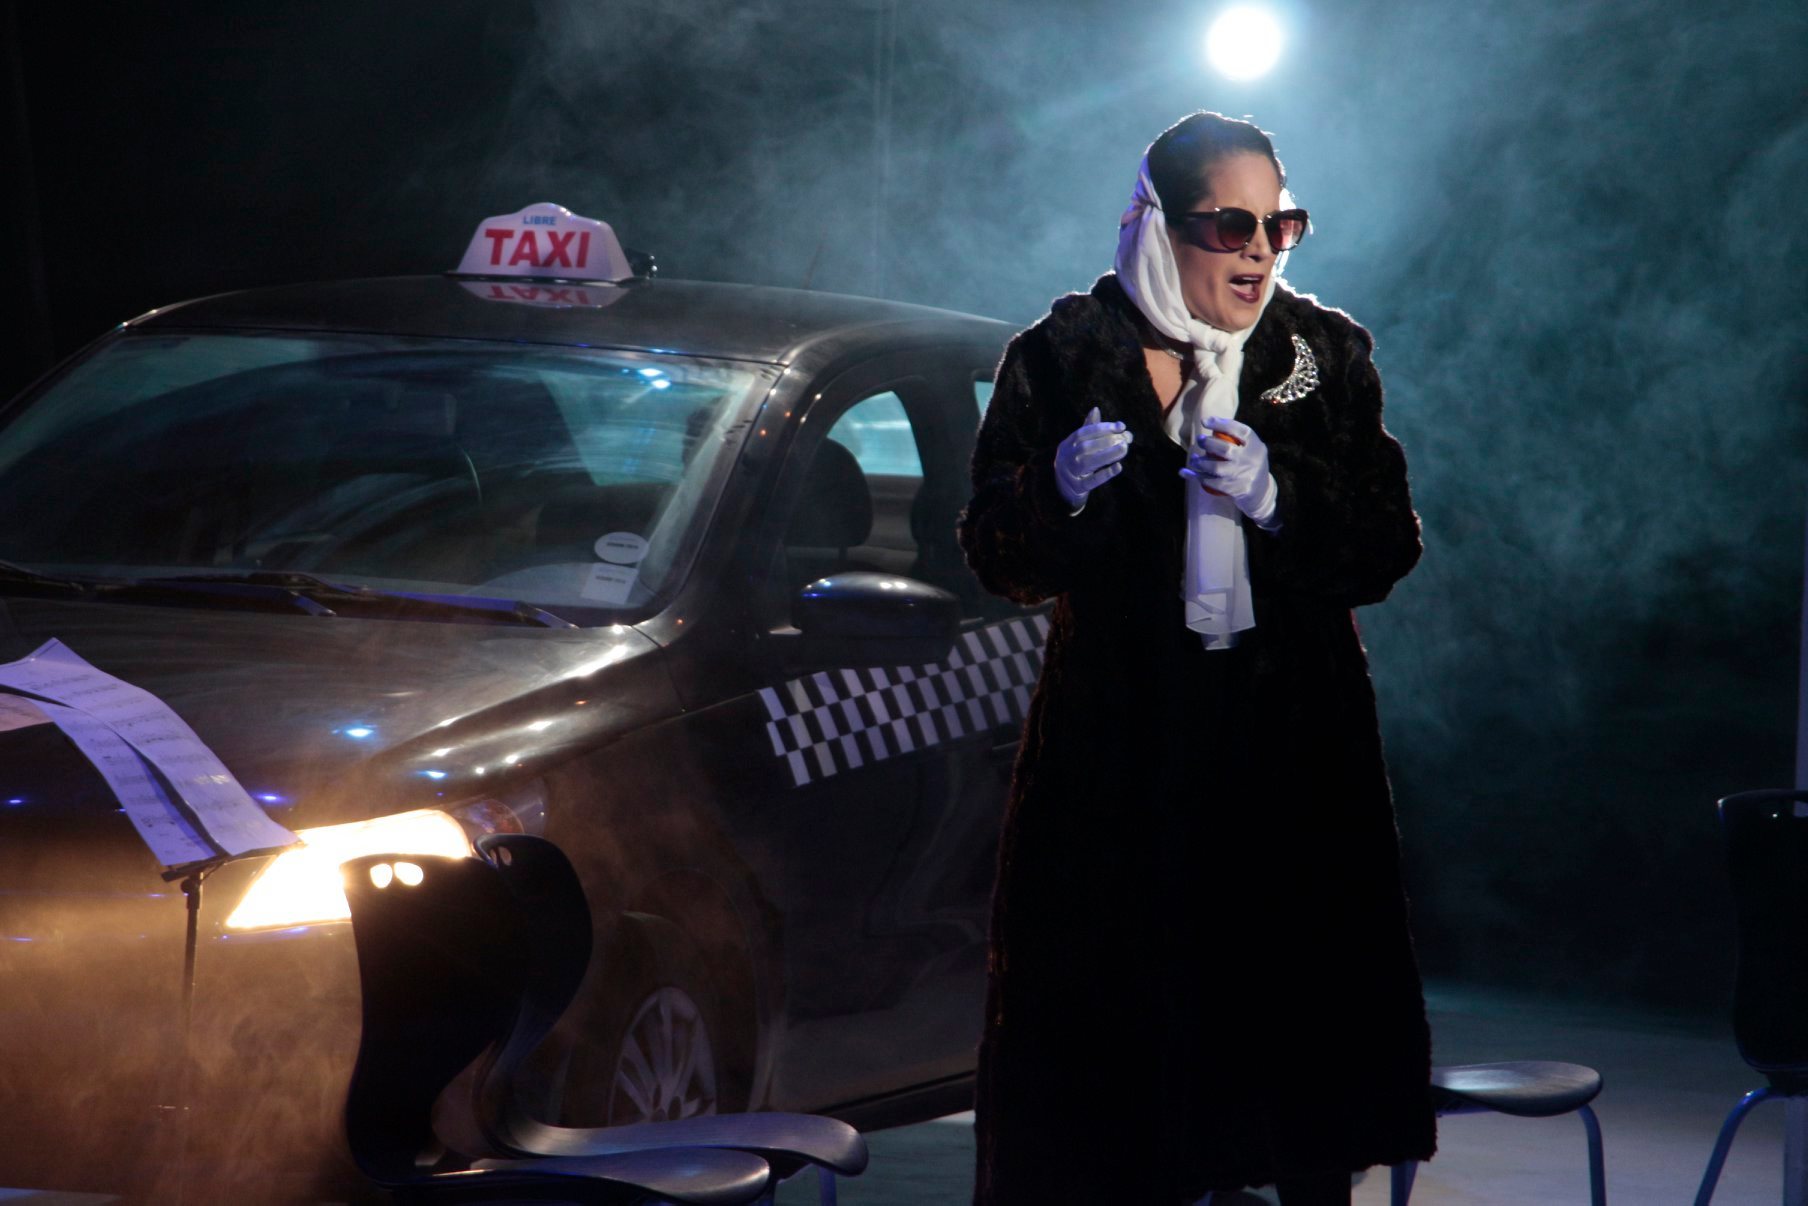 En esta producción, la Reina de la Noche no desciende de una nube, sino aparece en escena destruyendo una pared con un taxi (Fotografía: UNM)